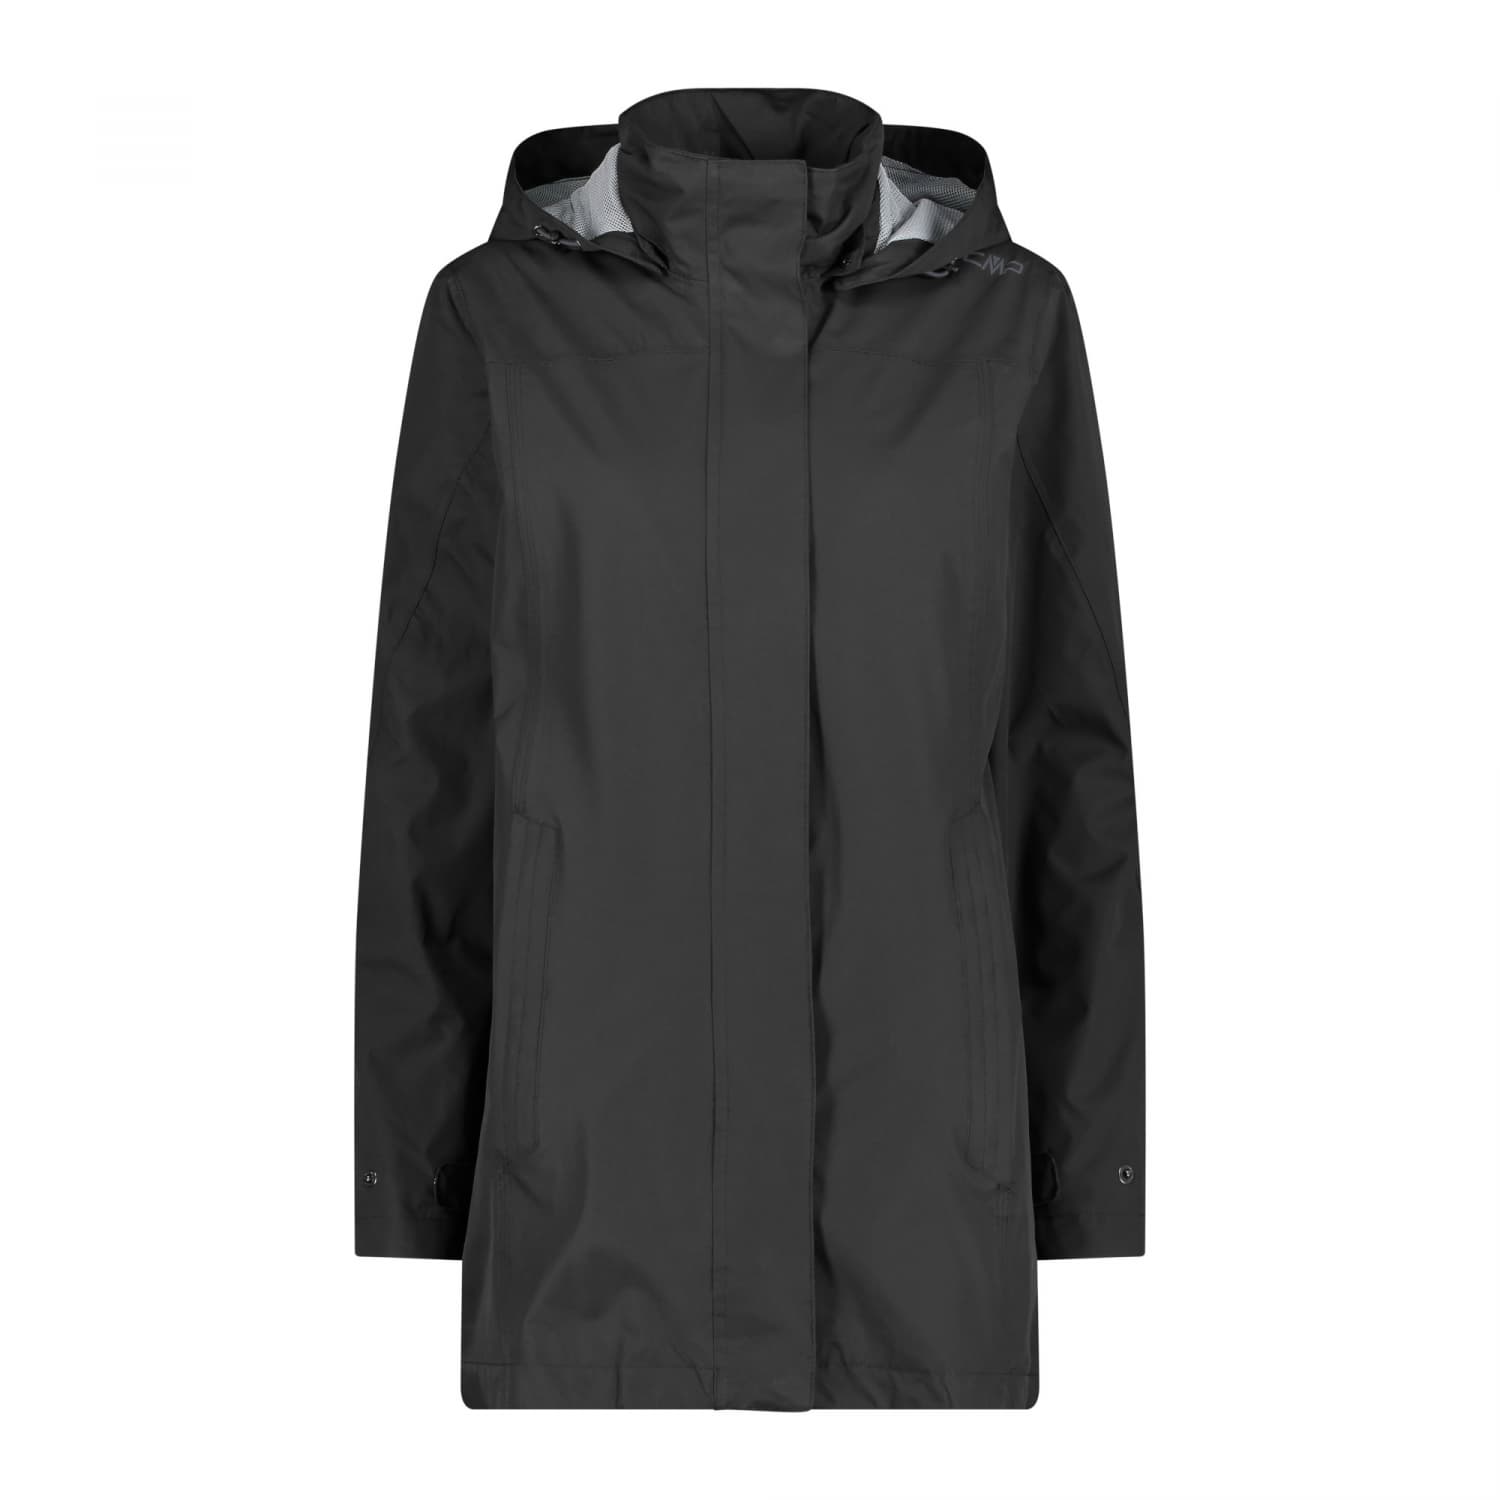 CMP Damen Regenjacke Woman Rain Jacket Button Hood 39X6646 | eBay